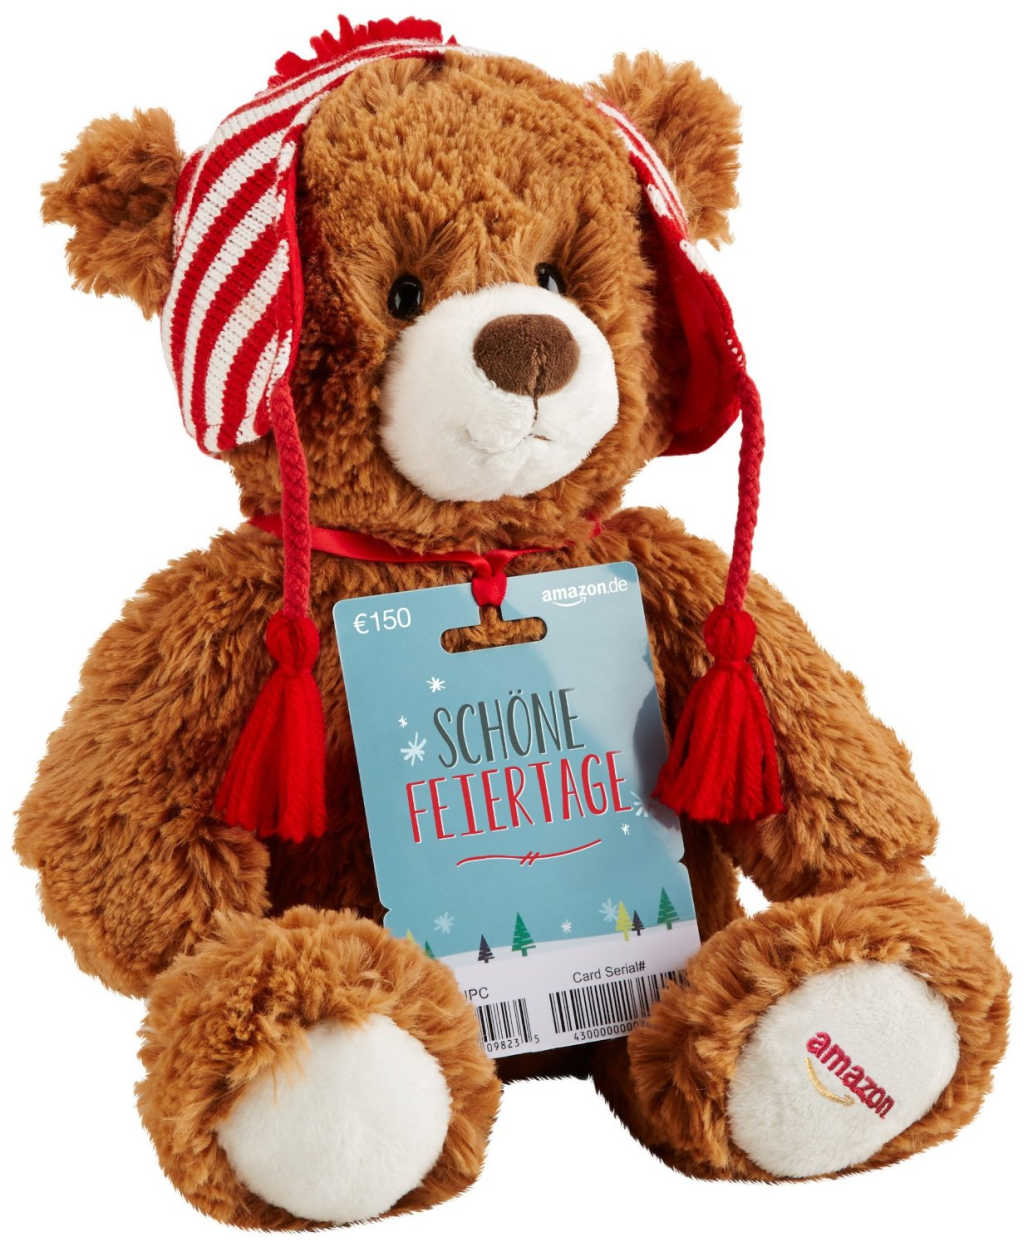 Da wird der Amazon Geschenkgutschein fast zur Nebensache: Der niedliche Amazon Teddybär ist 2015 erstmals im Sortiment.